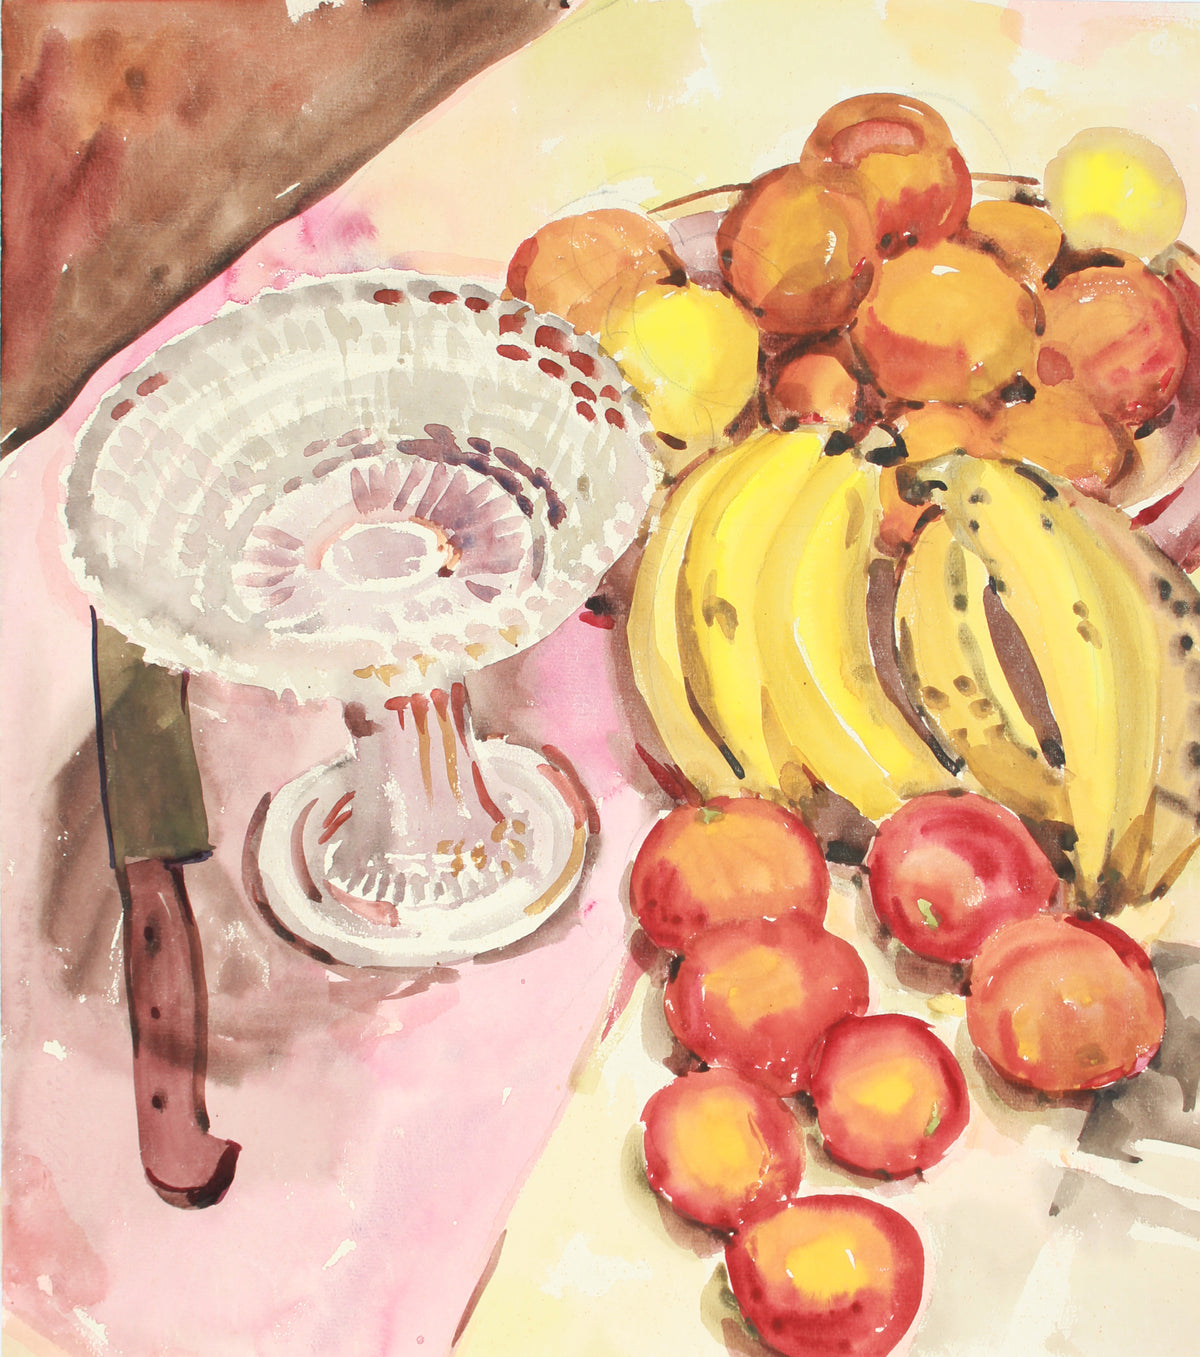 Peaches &amp; Bananas Still Life &lt;br&gt;20th Century Watercolor&lt;br&gt;&lt;br&gt;#B1921